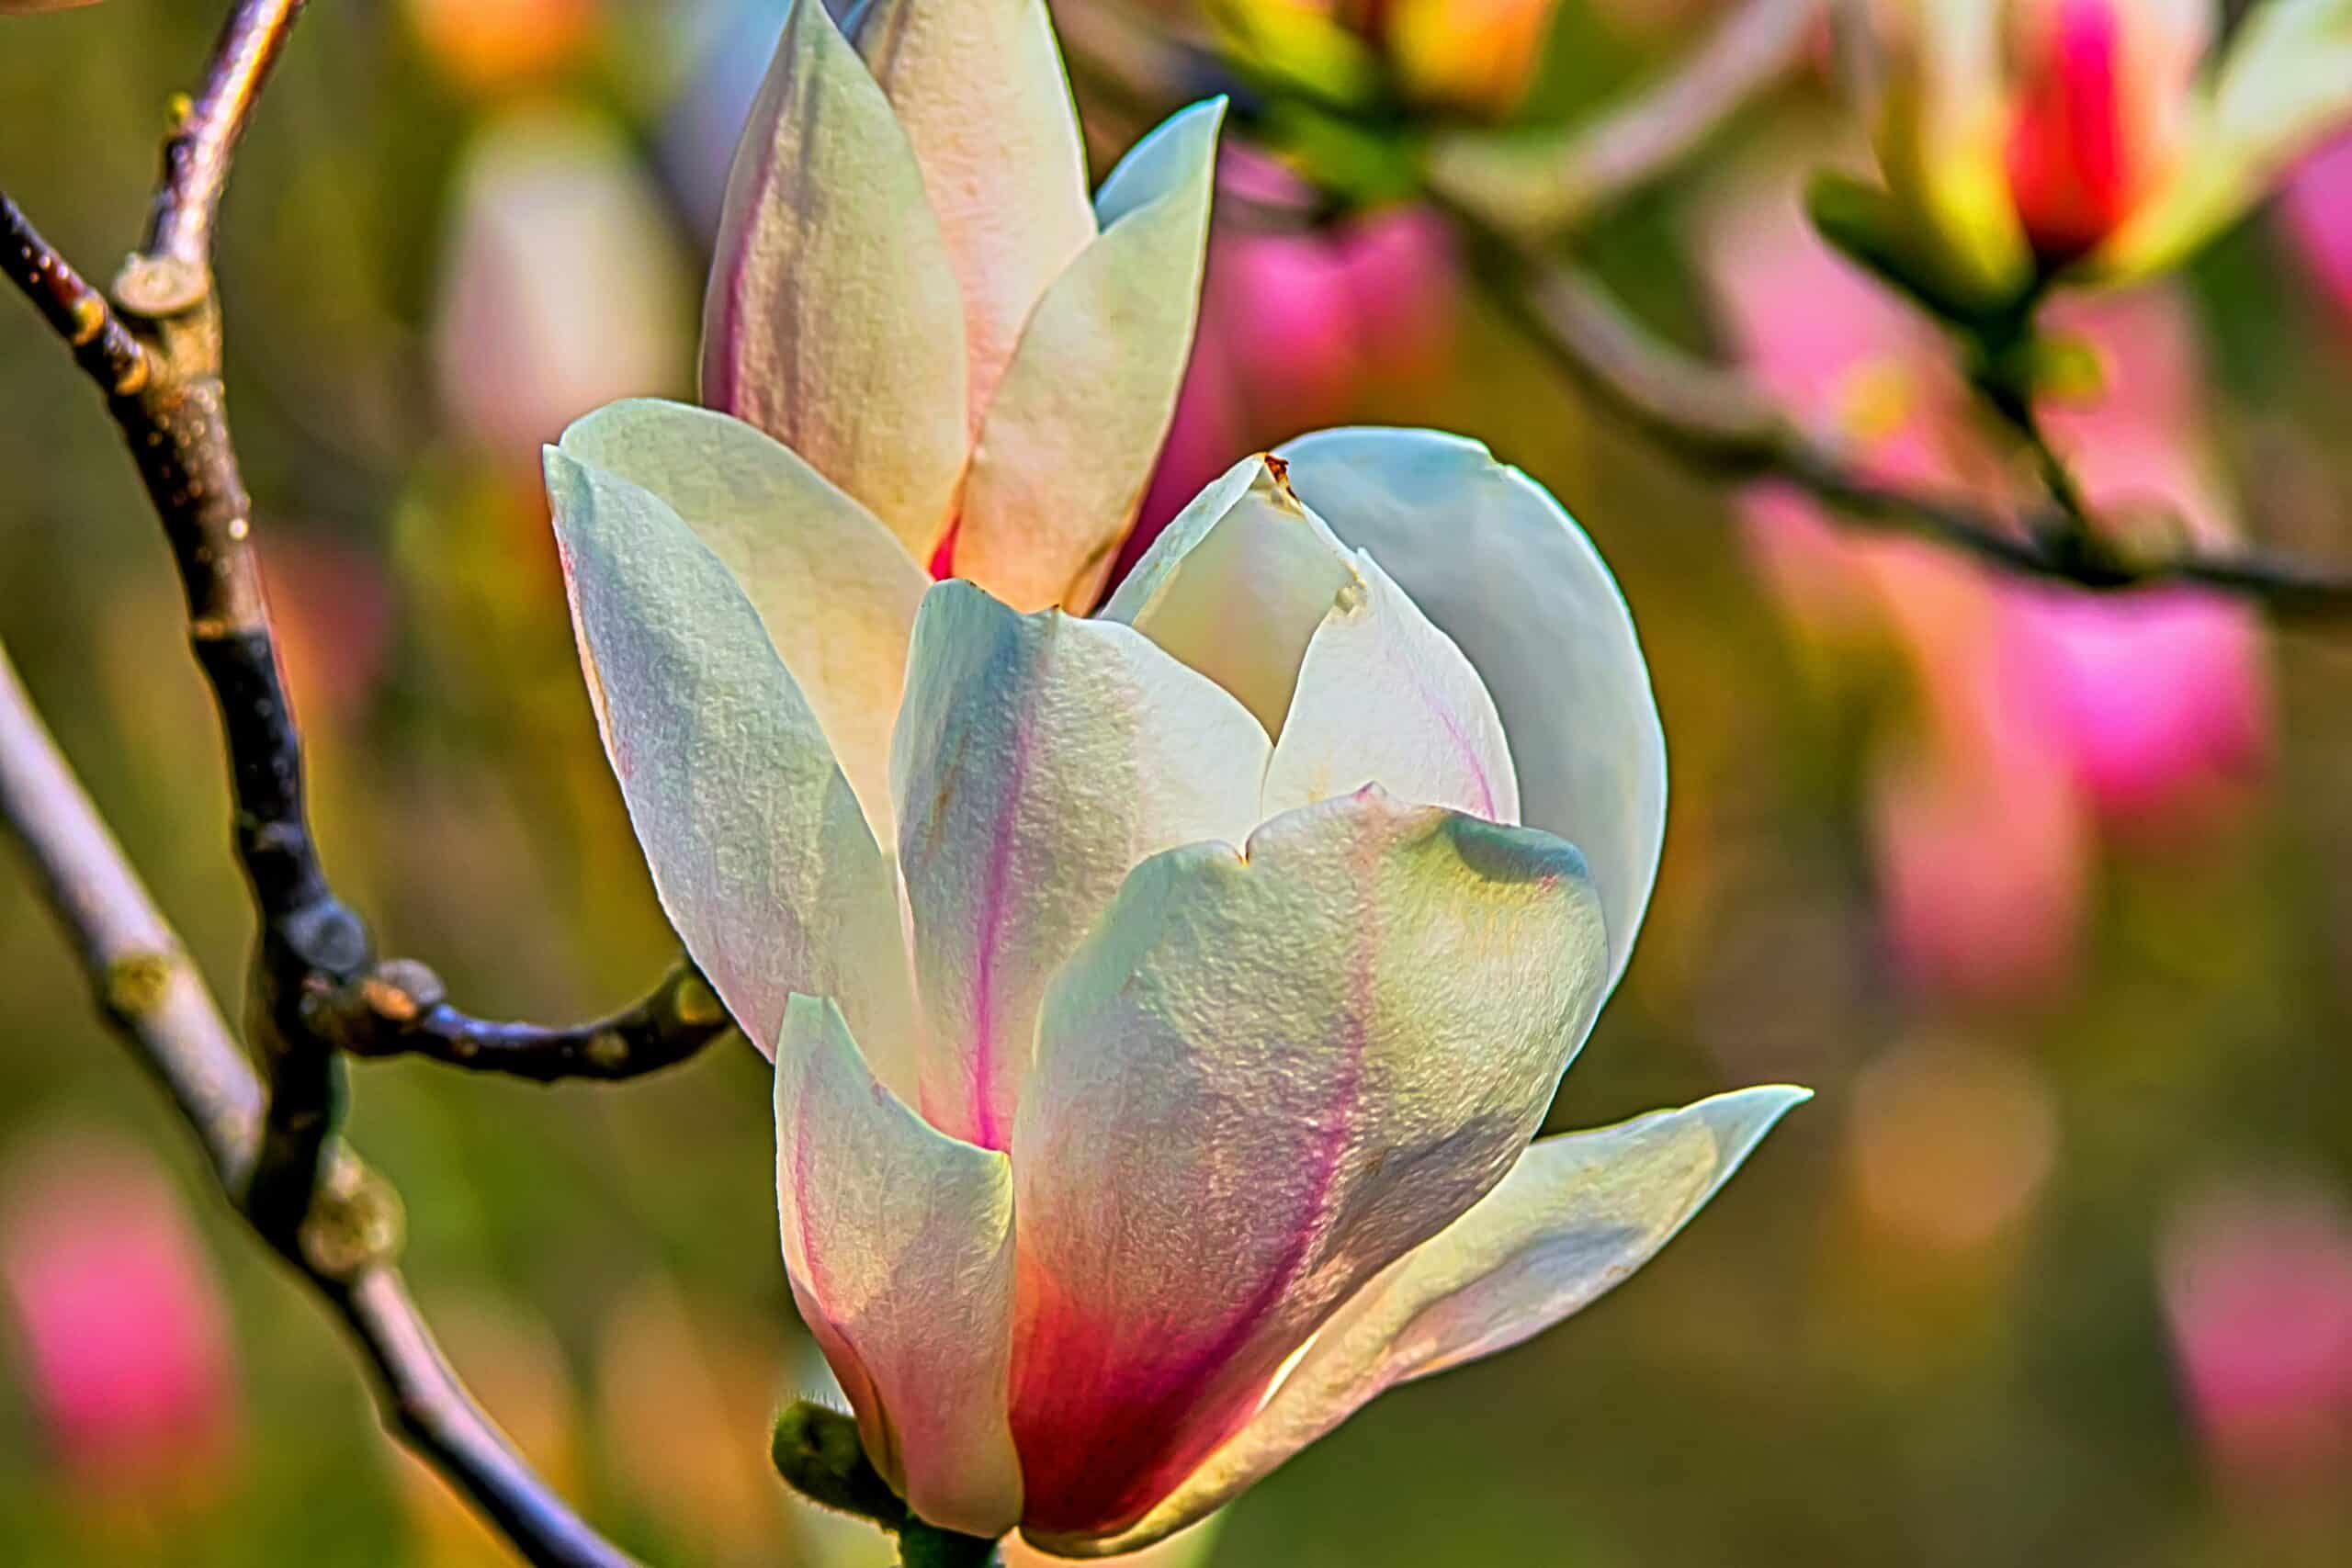 Descubra la belleza de los árboles de magnolia con sus impresionantes flores y su impresionante estatura. aprenda sobre diferentes variedades, consejos de plantación y técnicas de cuidado de estos icónicos árboles en flor.